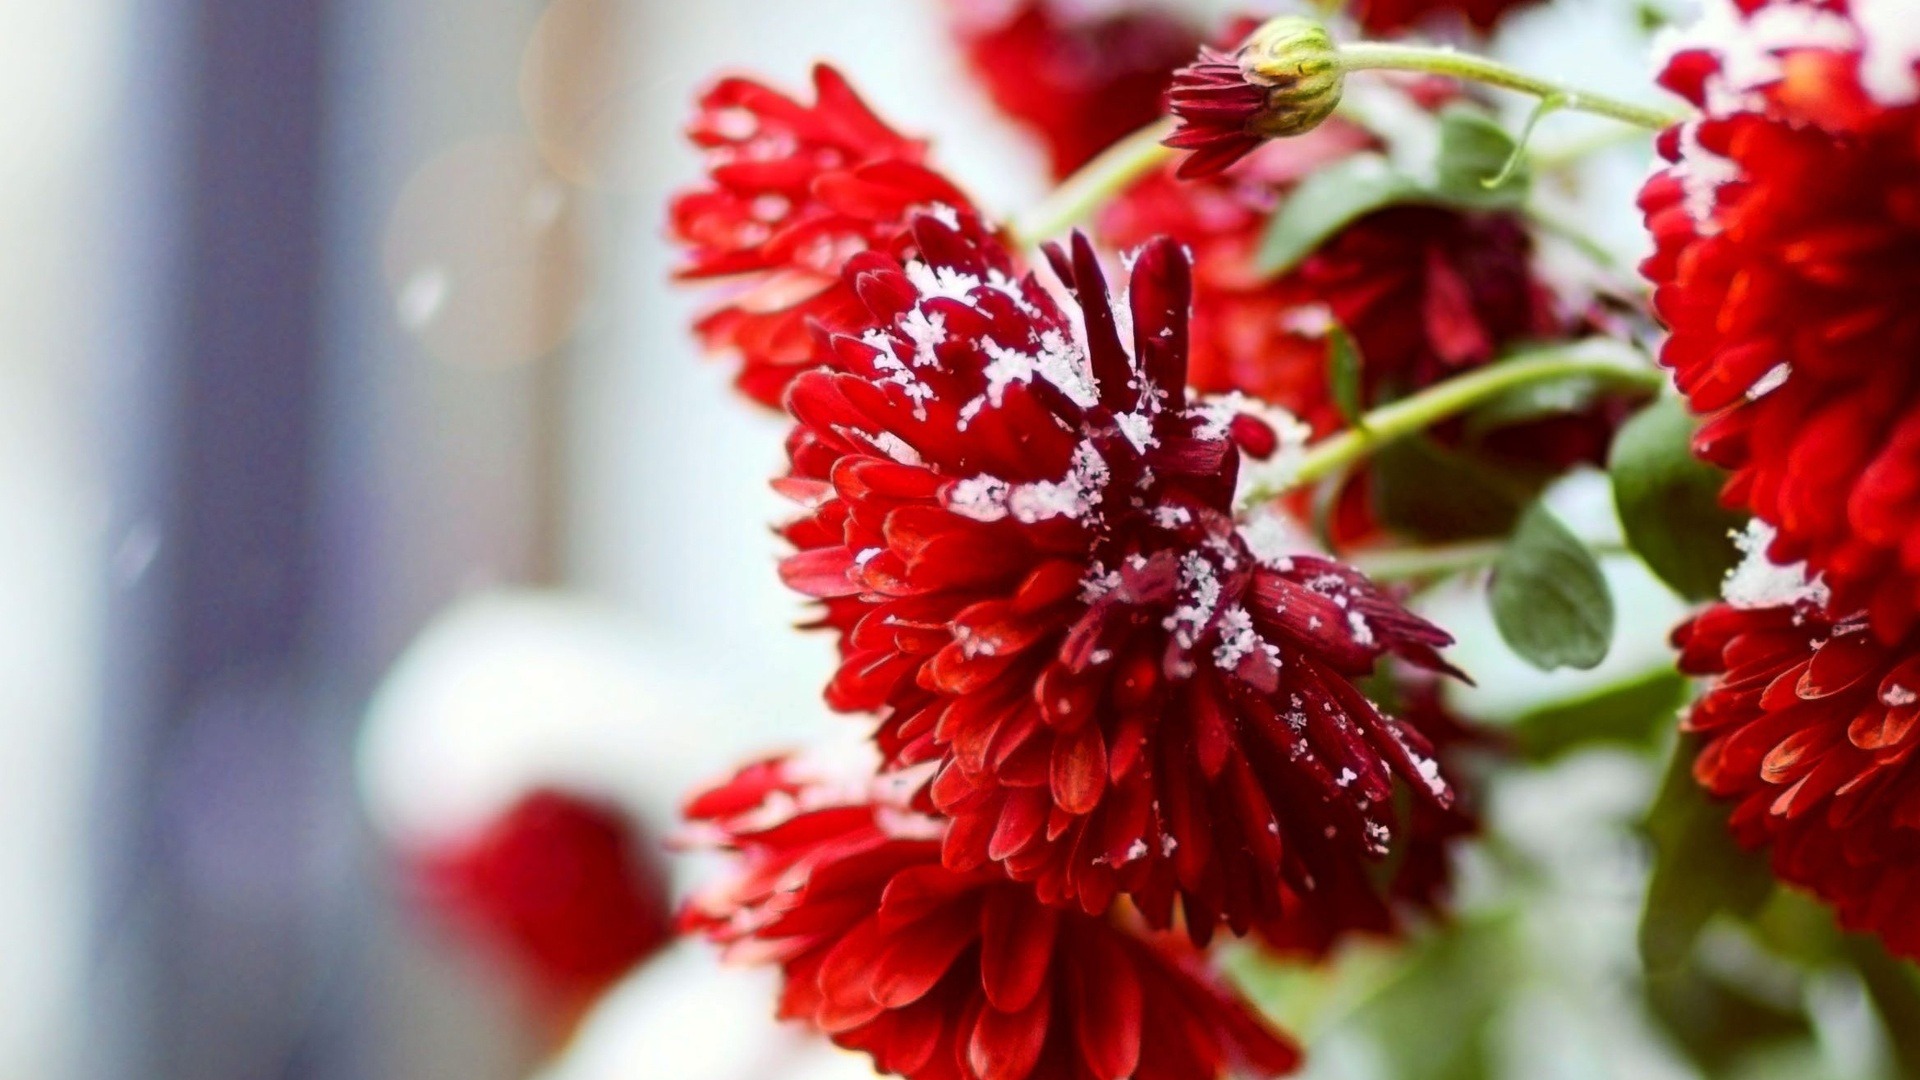 Snow Over Red Flowers Desktop Wallpaper Winter Scenery